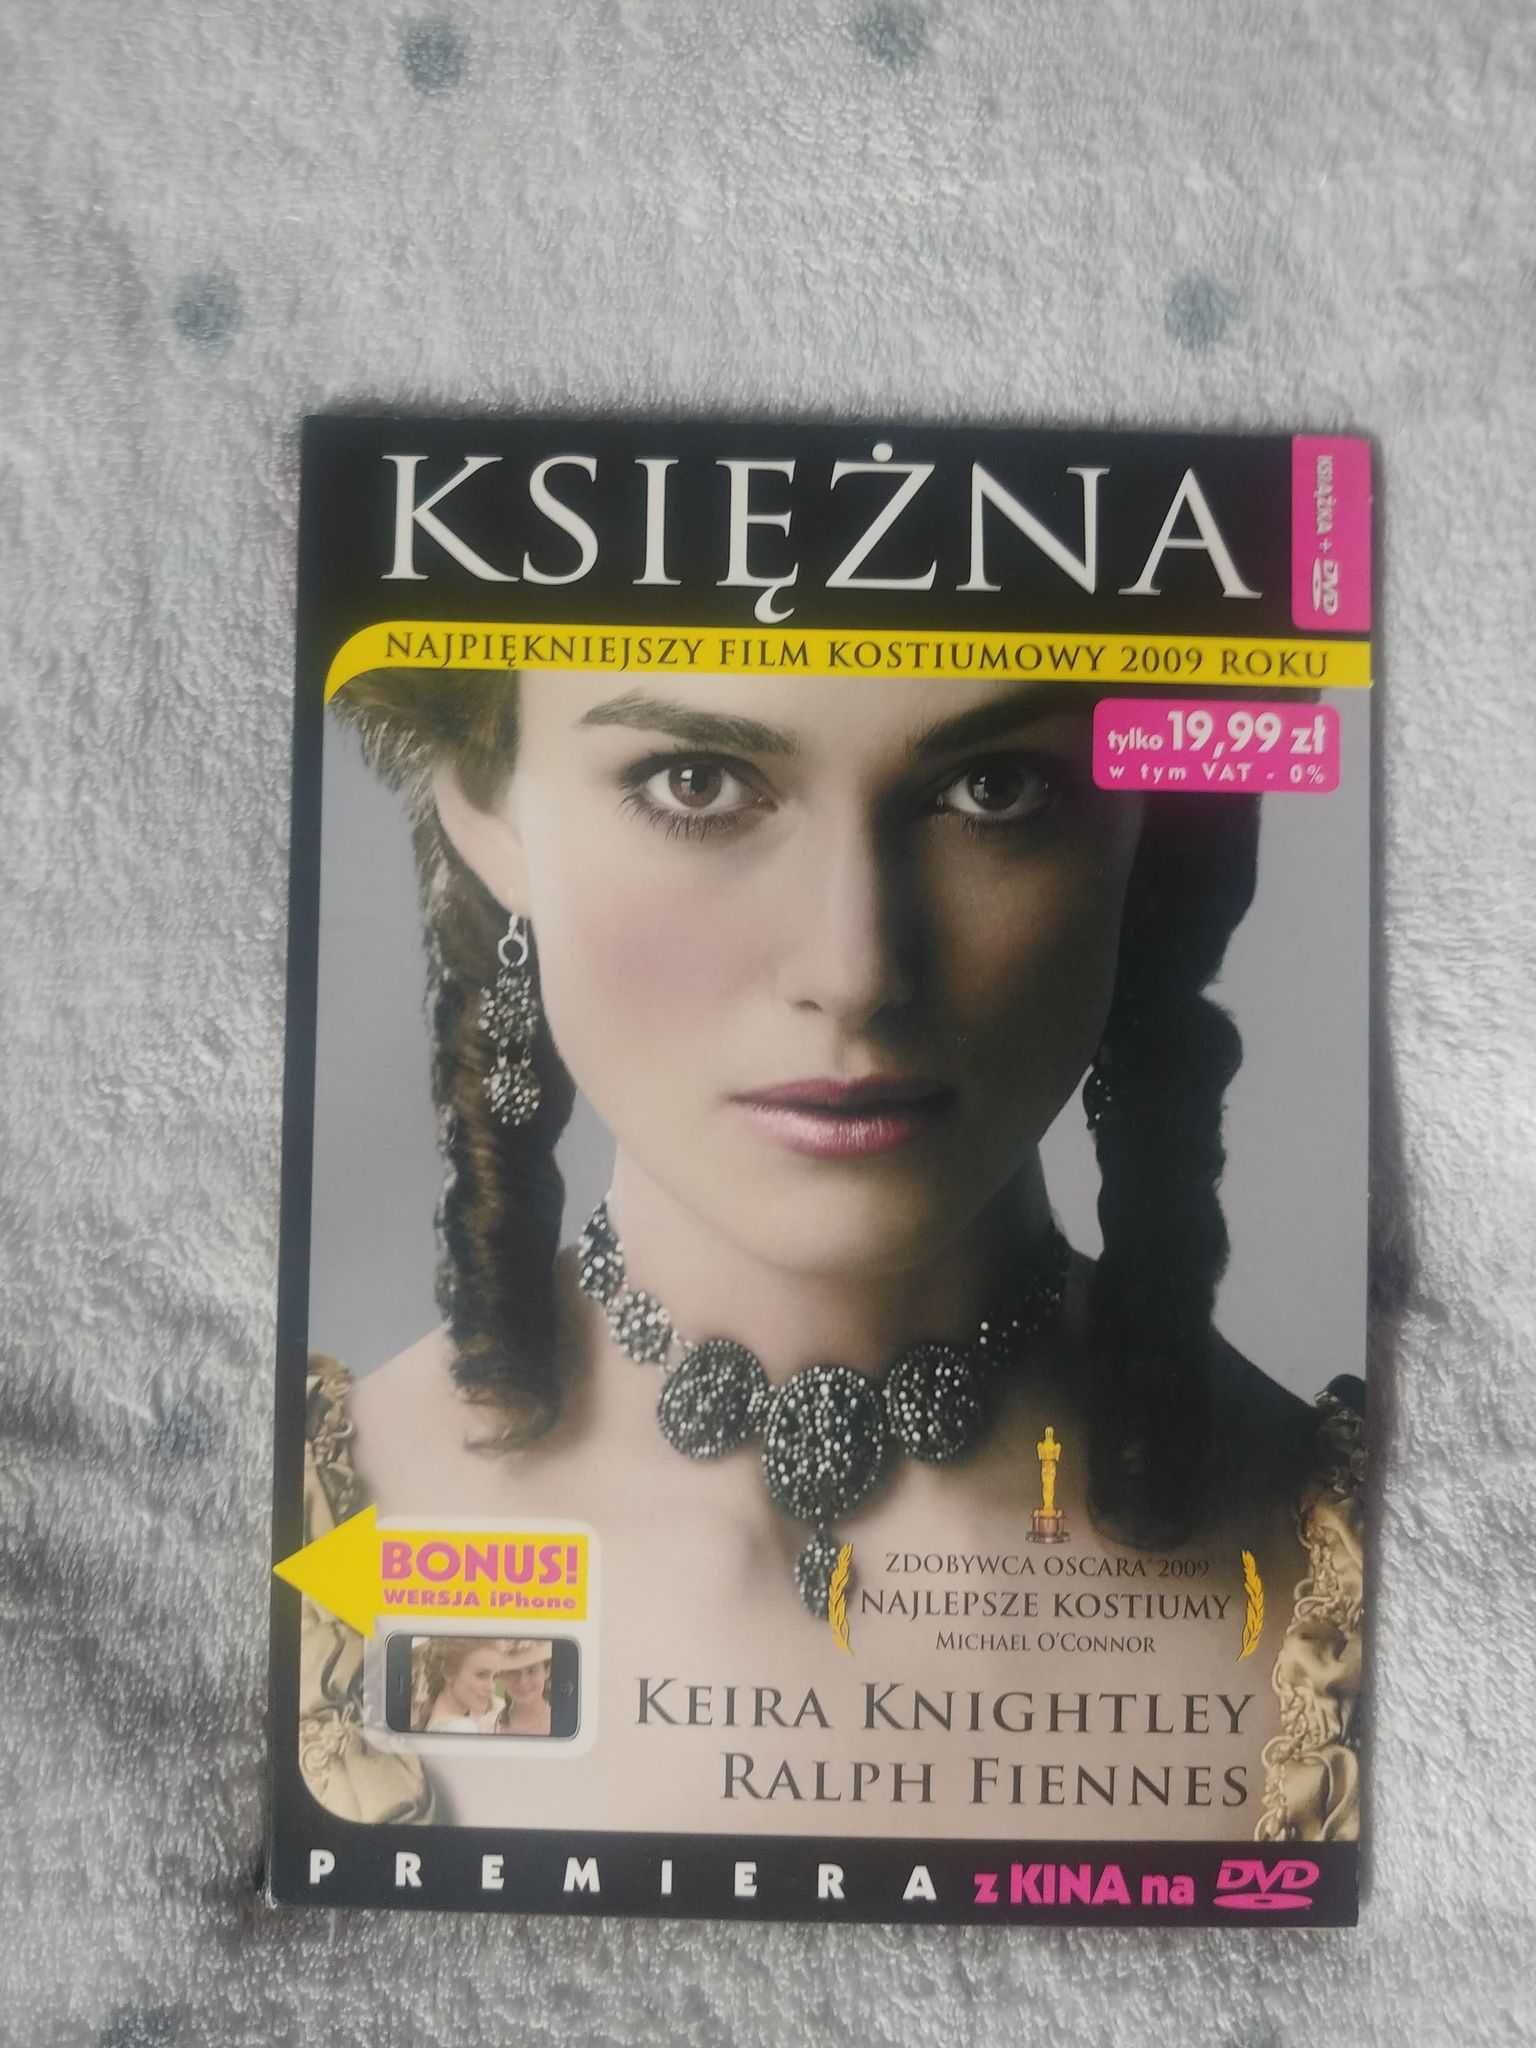 Film z Keirą Knightley "Księżna" (DVD)